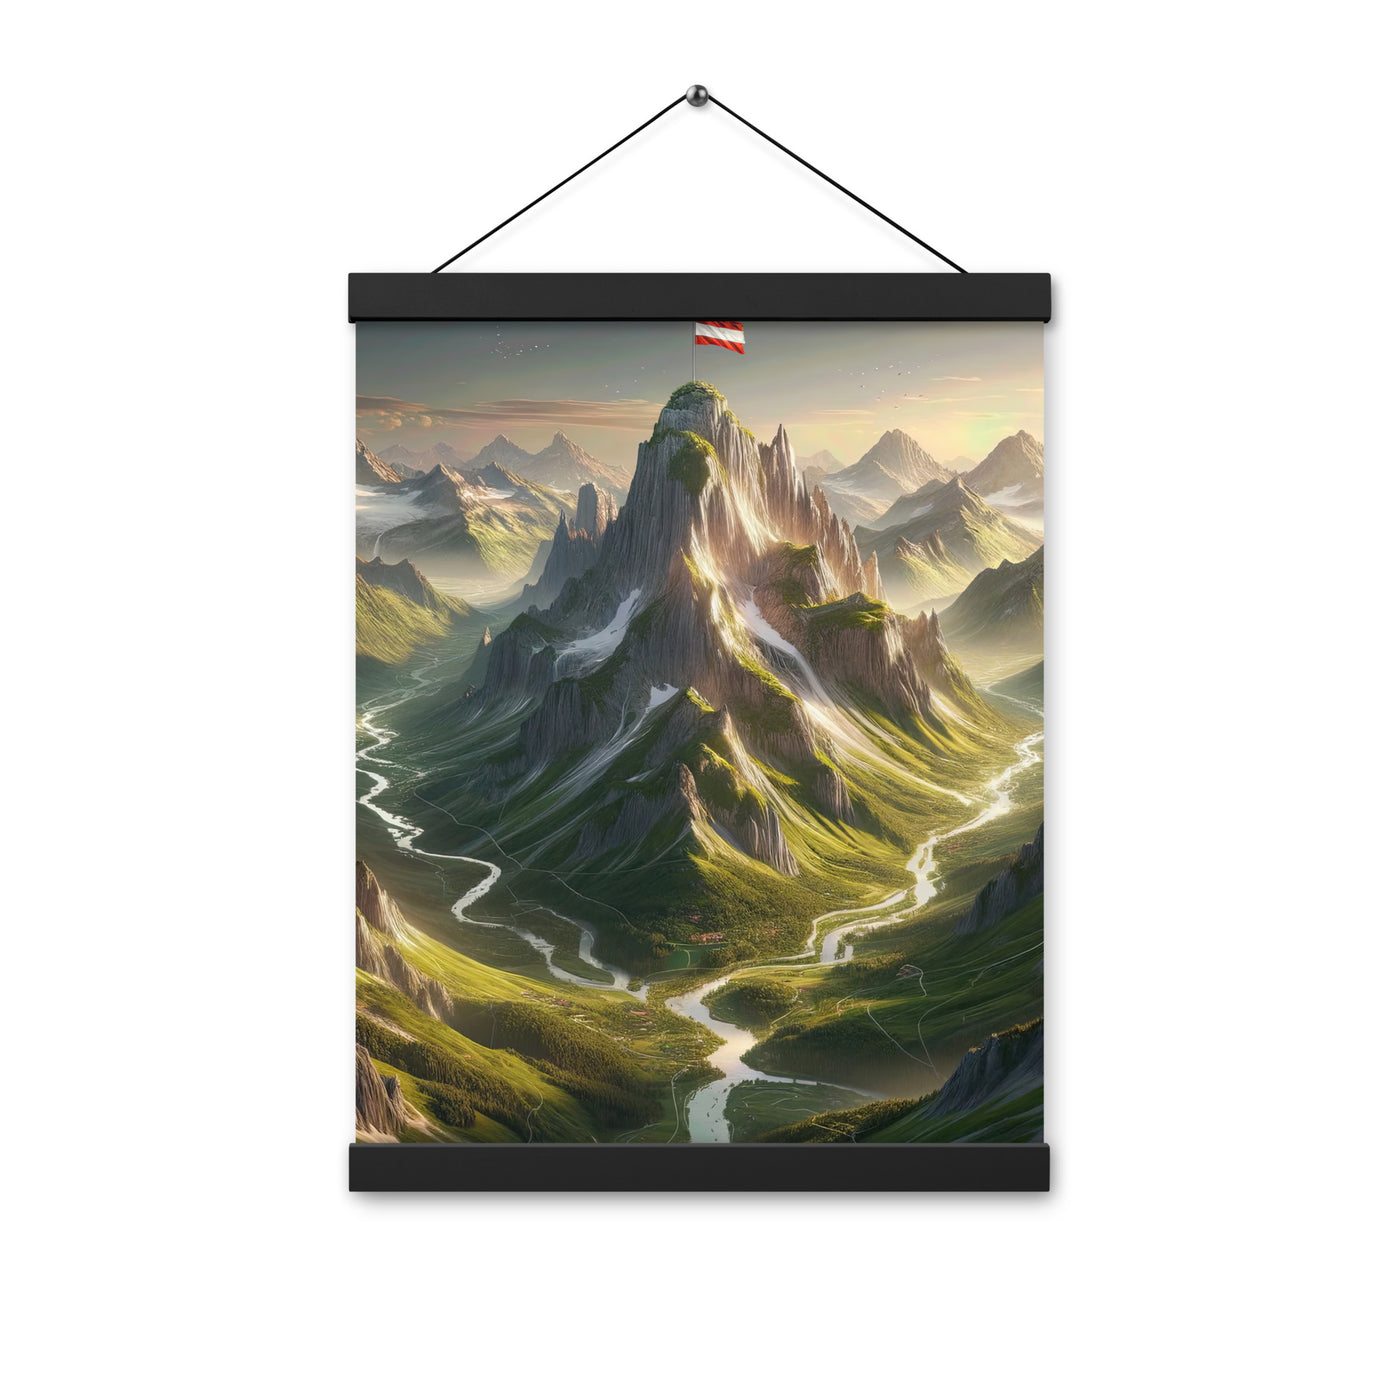 Fotorealistisches Bild der Alpen mit österreichischer Flagge, scharfen Gipfeln und grünen Tälern - Enhanced Matte Paper Poster With berge xxx yyy zzz 30.5 x 40.6 cm